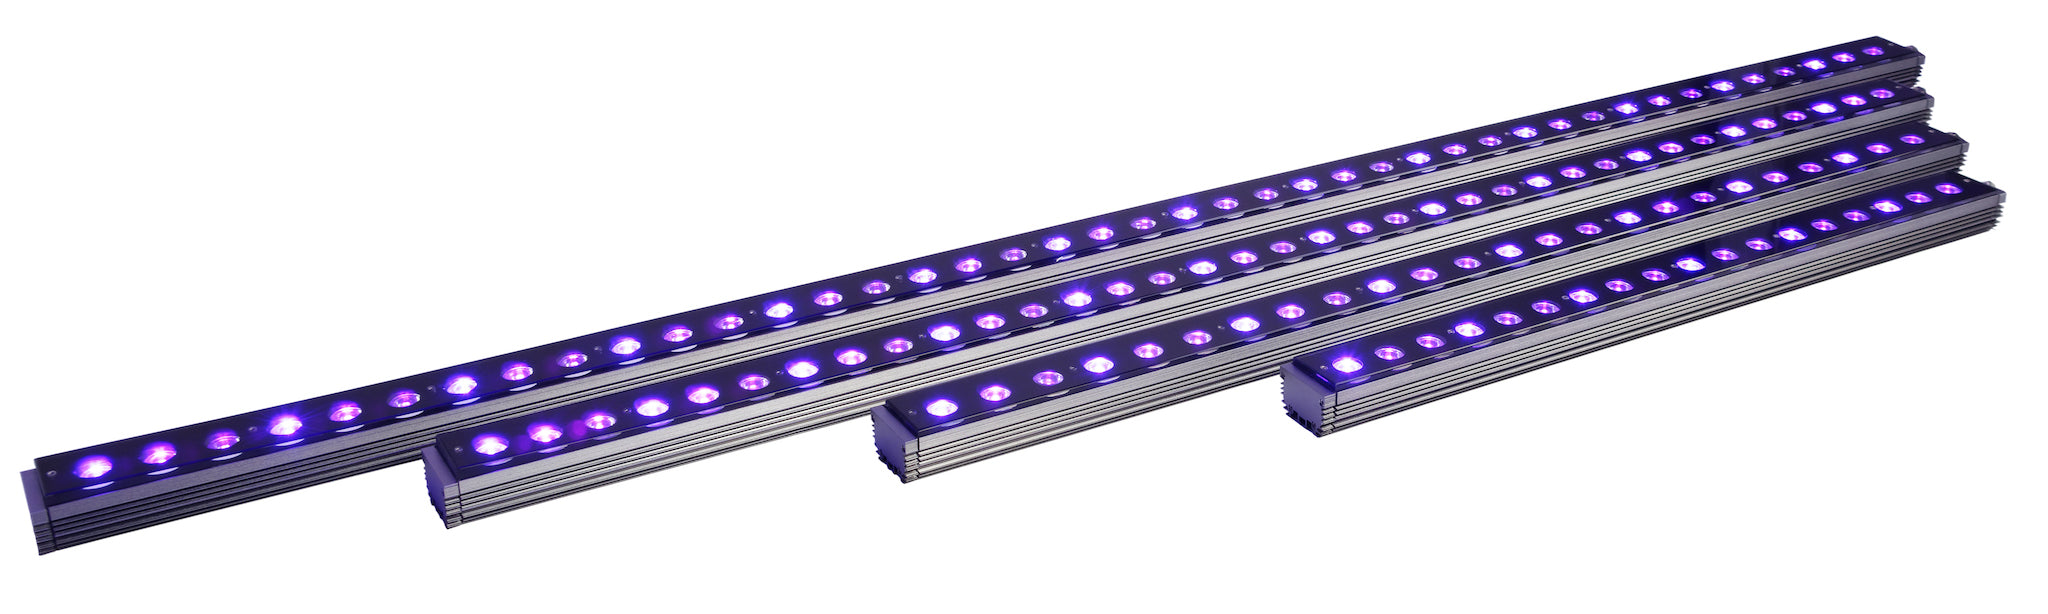 OR3 UV/Violeta - Barra LED para Acuario de Arrecife